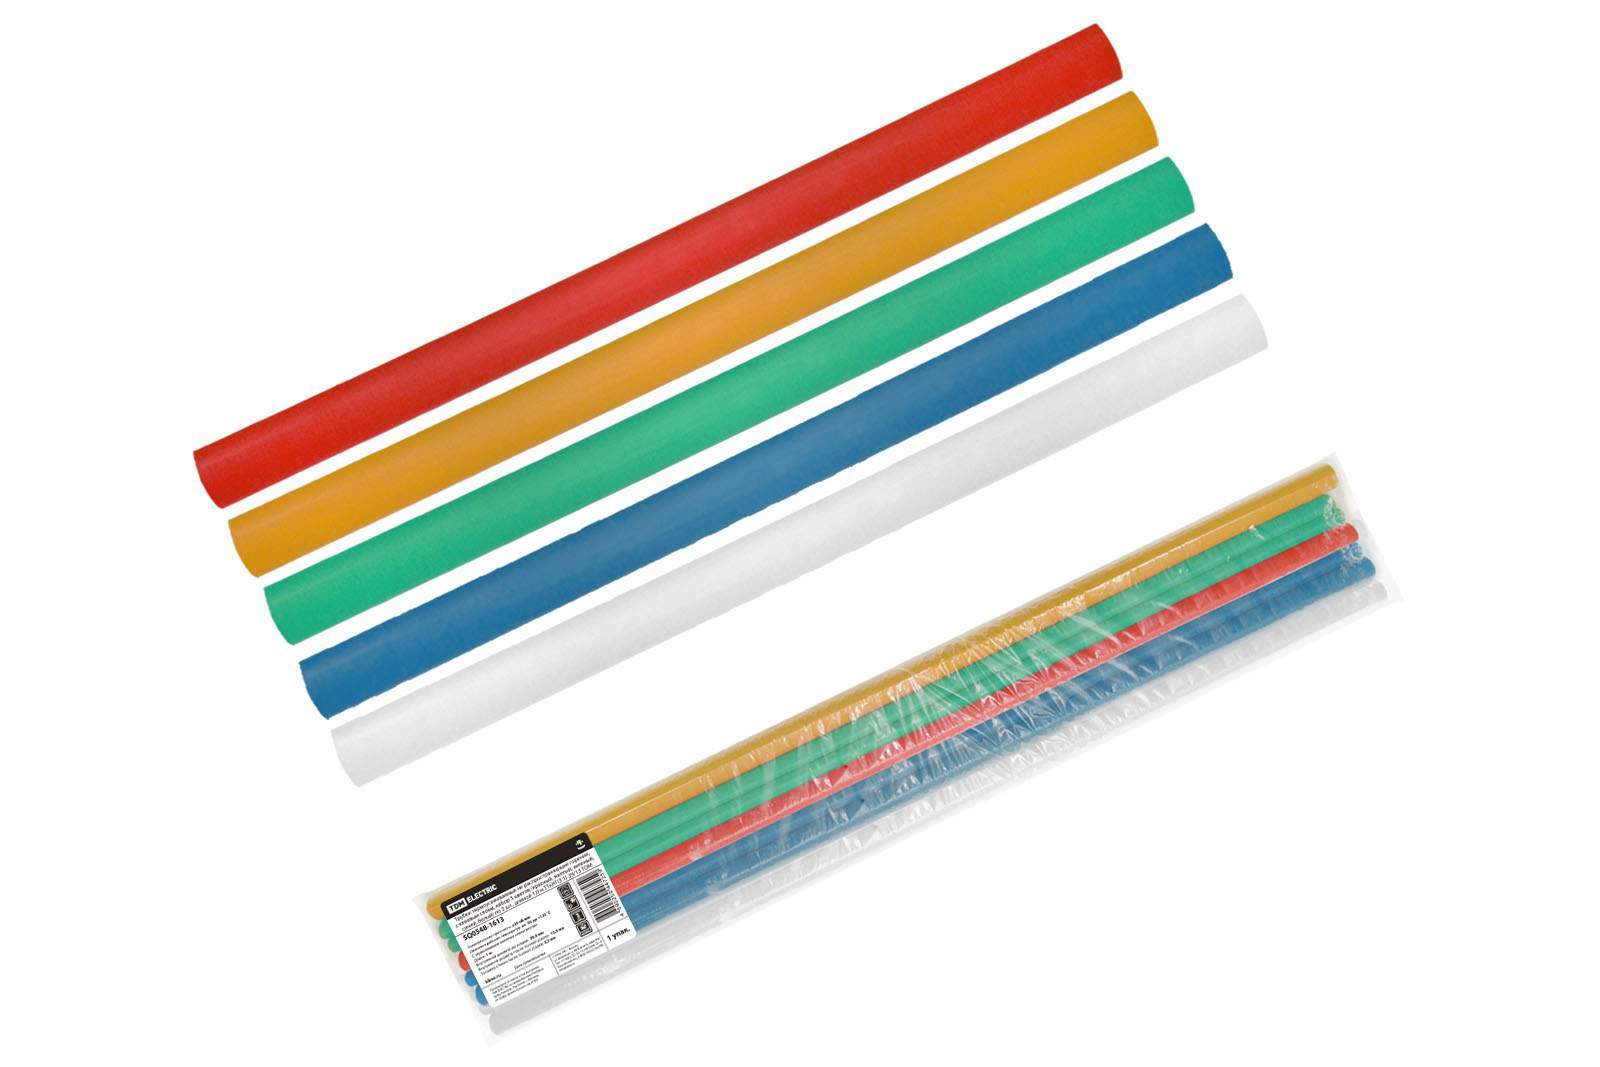 трубки термоусаживаемые, клеевые, набор 5 цветов по 2 шт. тткнг(3:1)-39/13 tdm от BTSprom.by